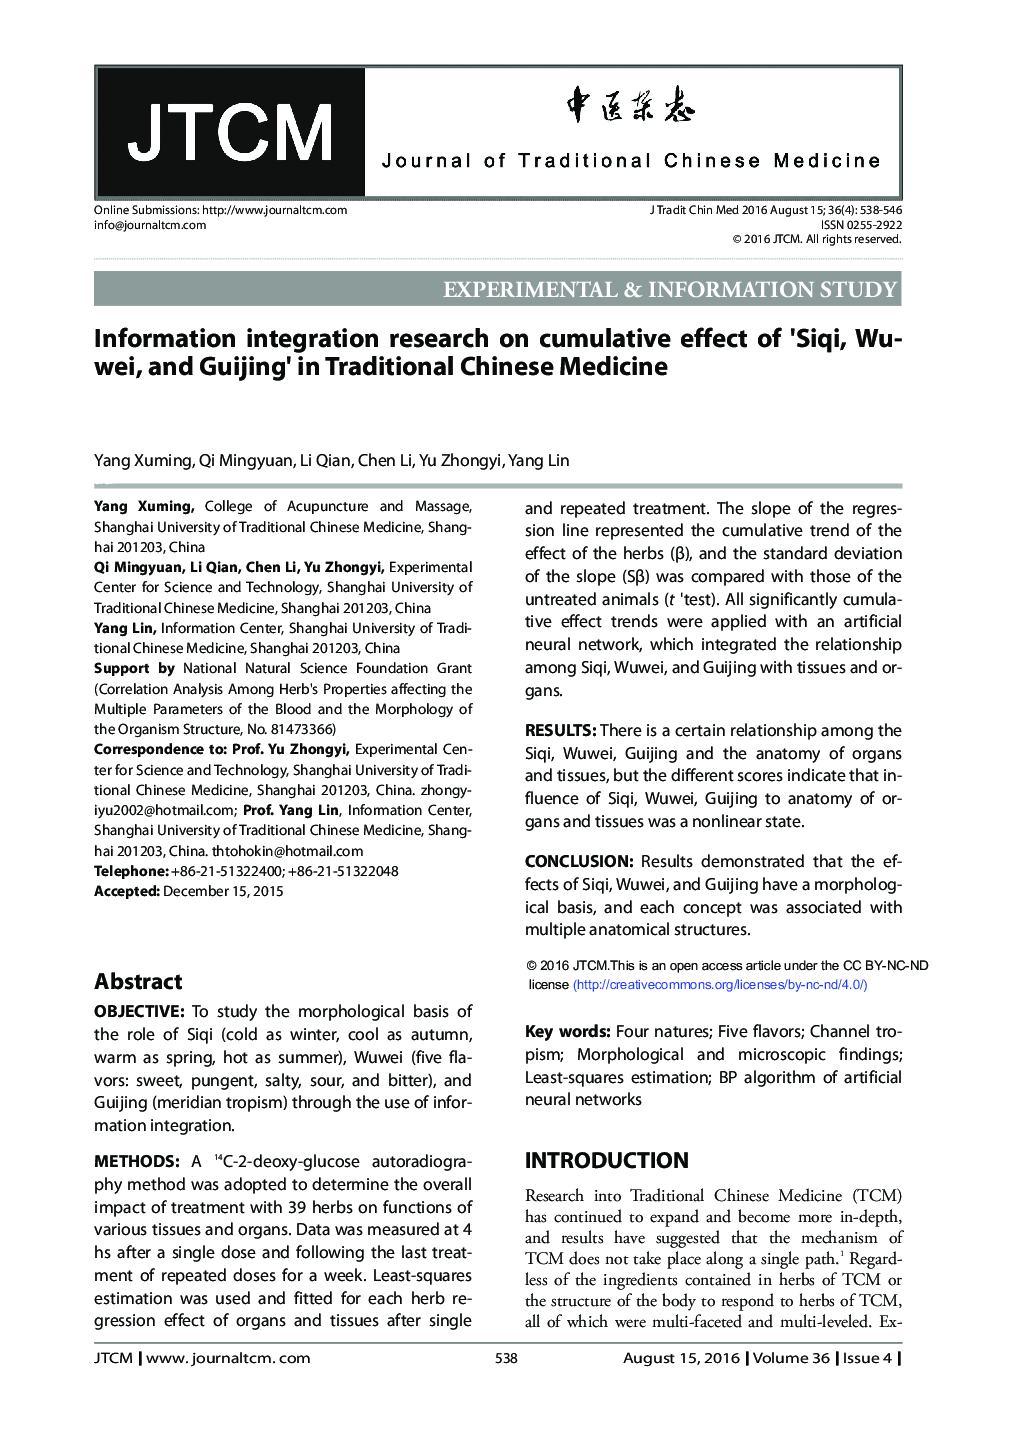 تحقیقات یکپارچه سازی اطلاعات بر اثر انباشتی Siqi ، Wuwei و Guijing در طب سنتی چینی